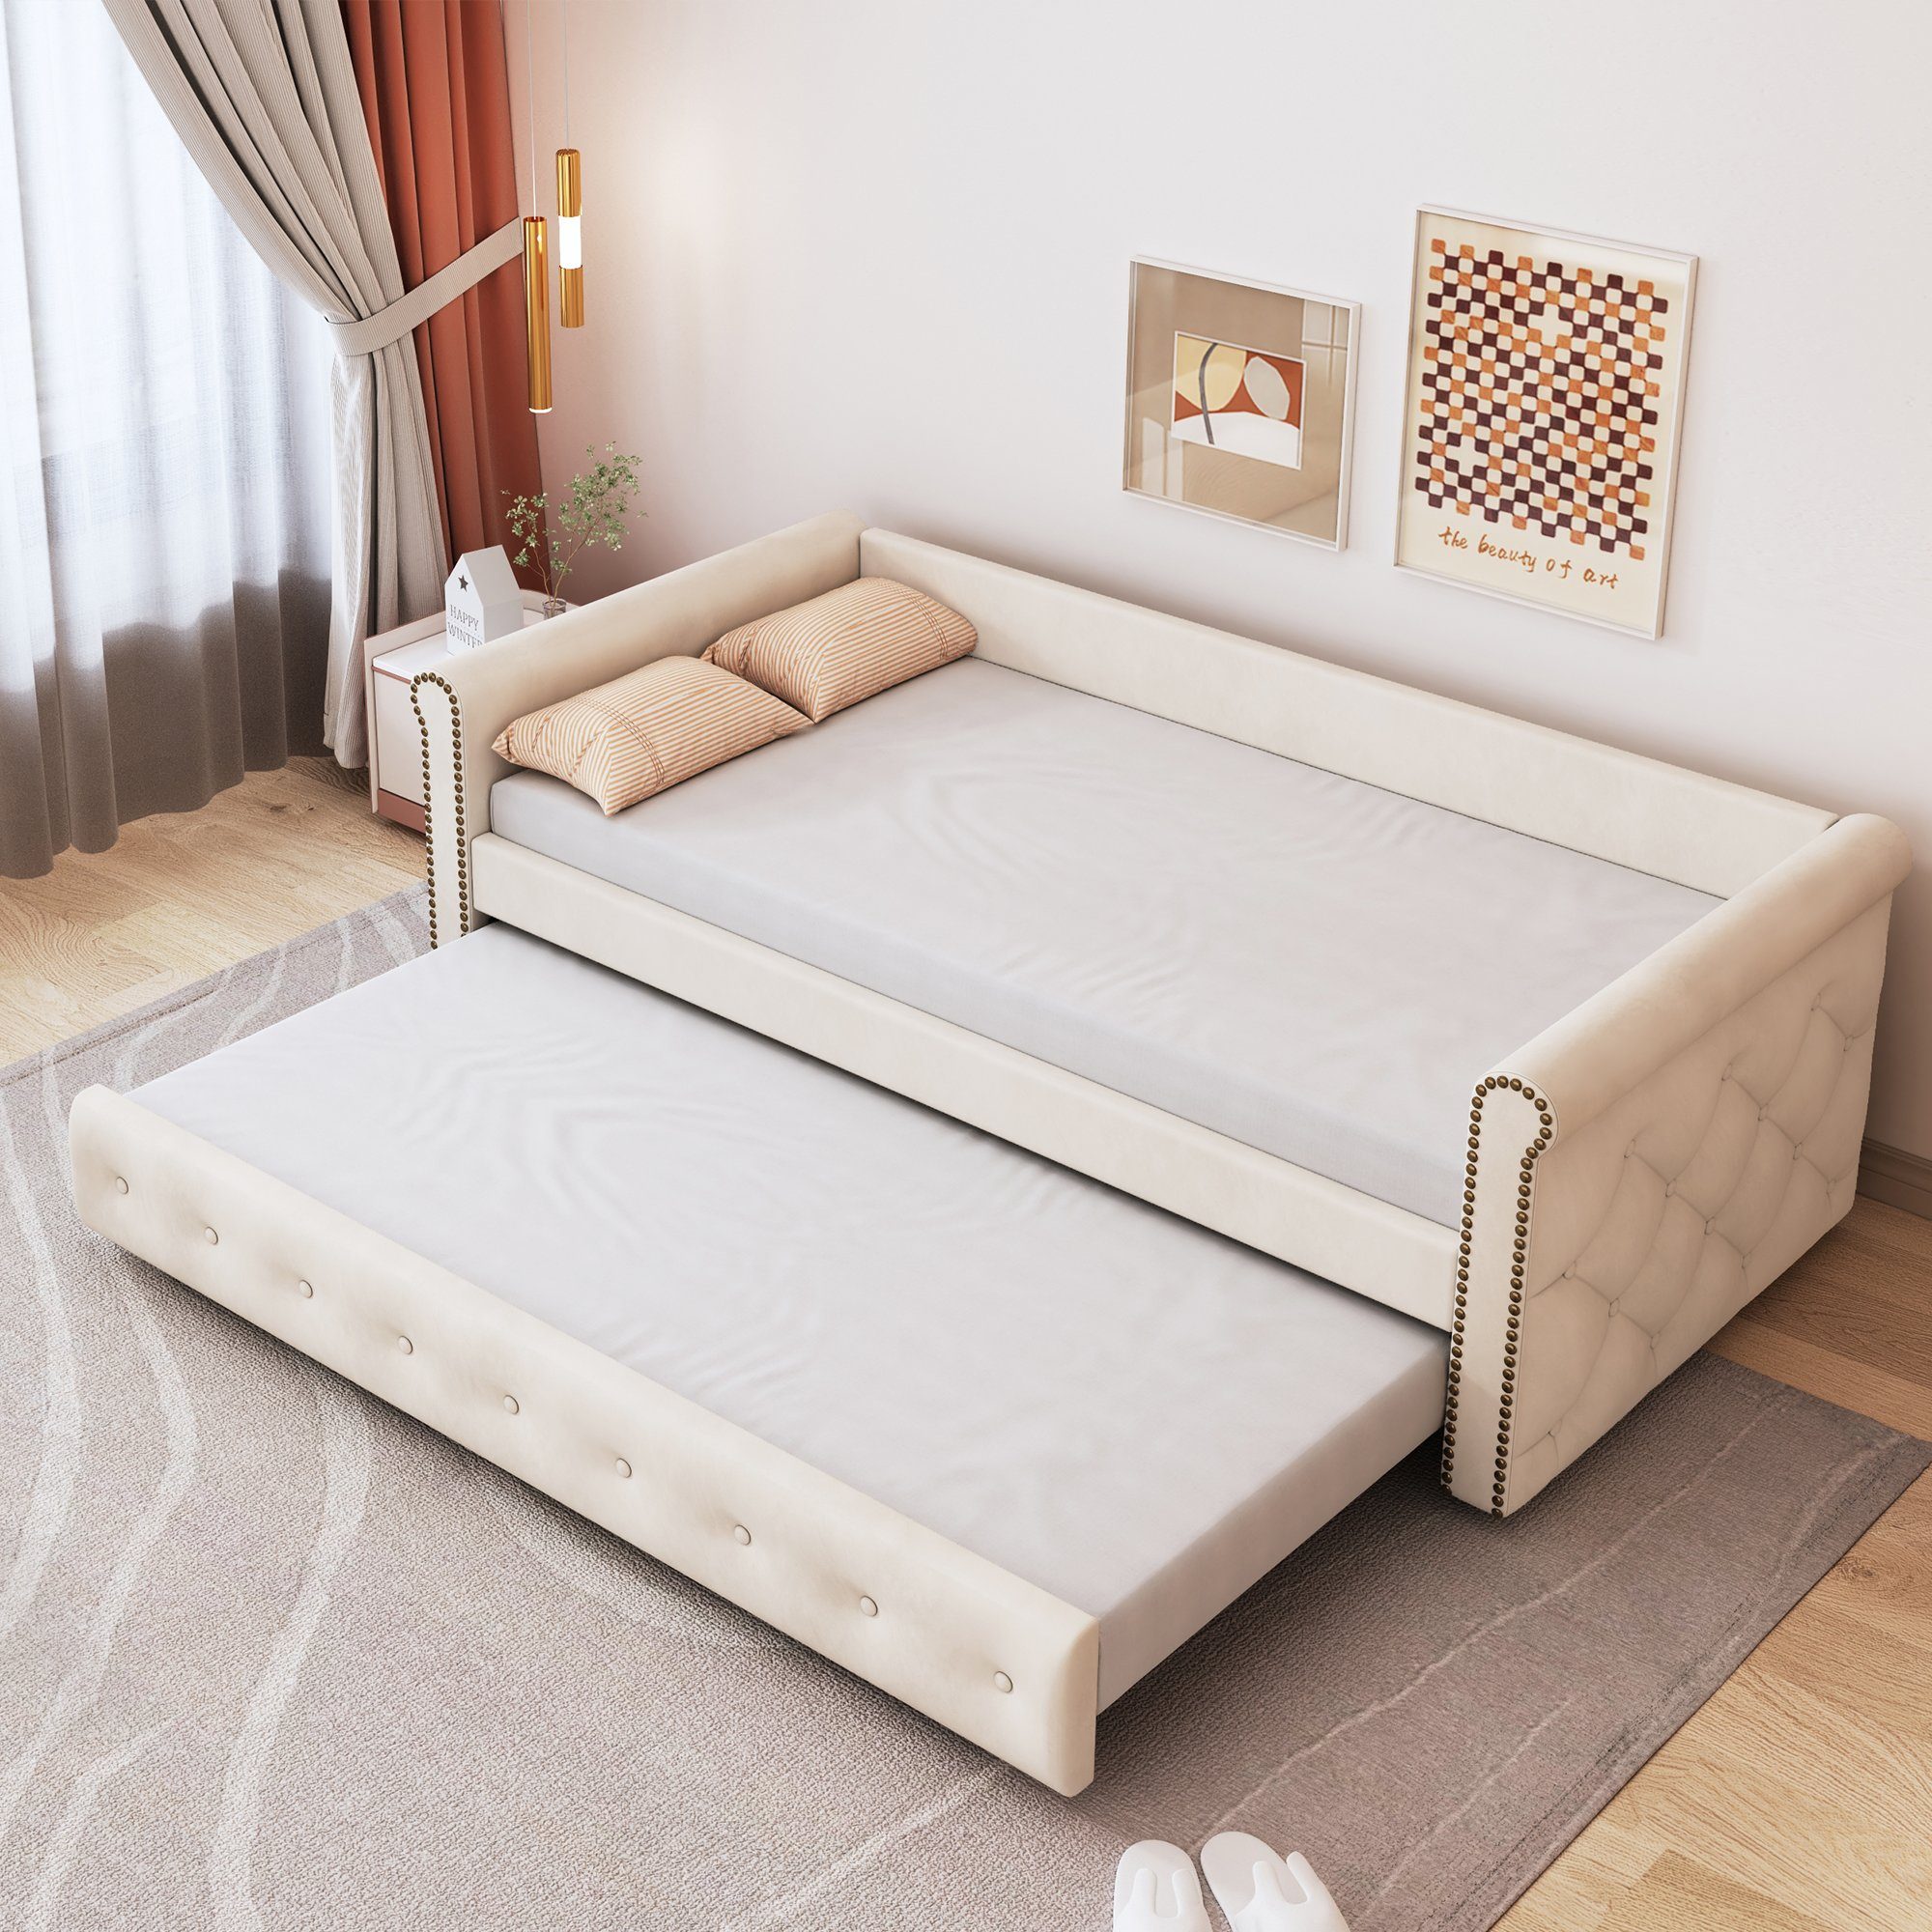 SOFTWEARY Schlafsofa Einzelsofa mit Bettfunktion, Ausziehbett inkl. Lattenrost, 90x200 cm, Einzelbett, Jugendbett aus Holz, Bezug aus Samt beige